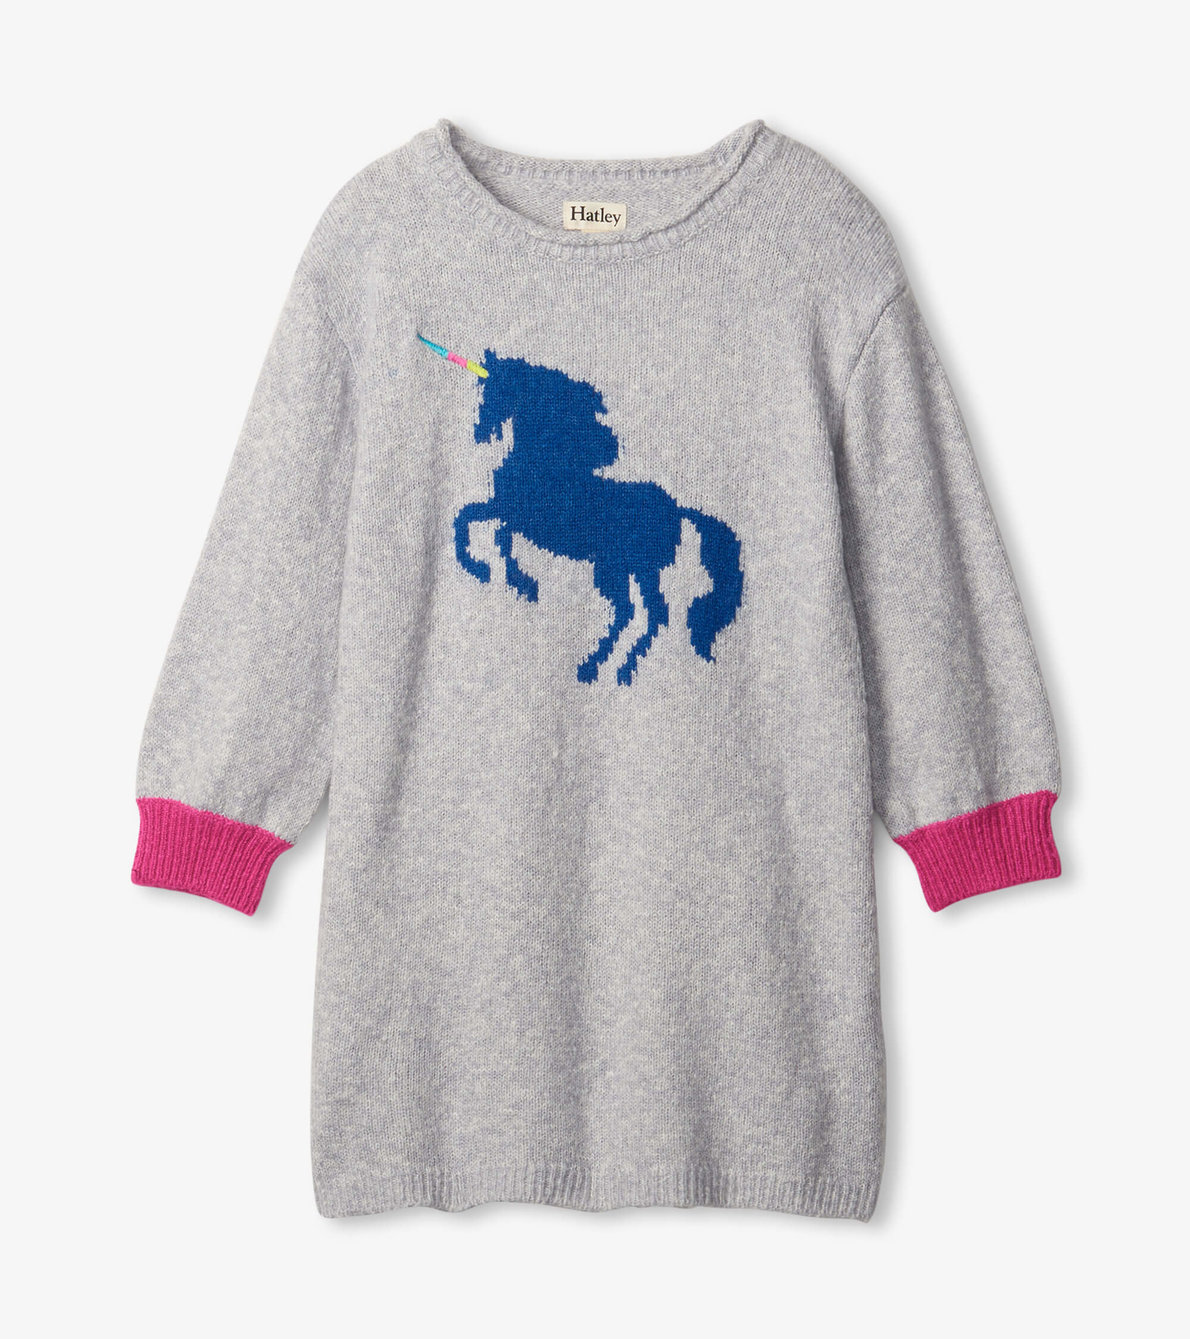 View larger image of Girls Unicorn Sweater Dress